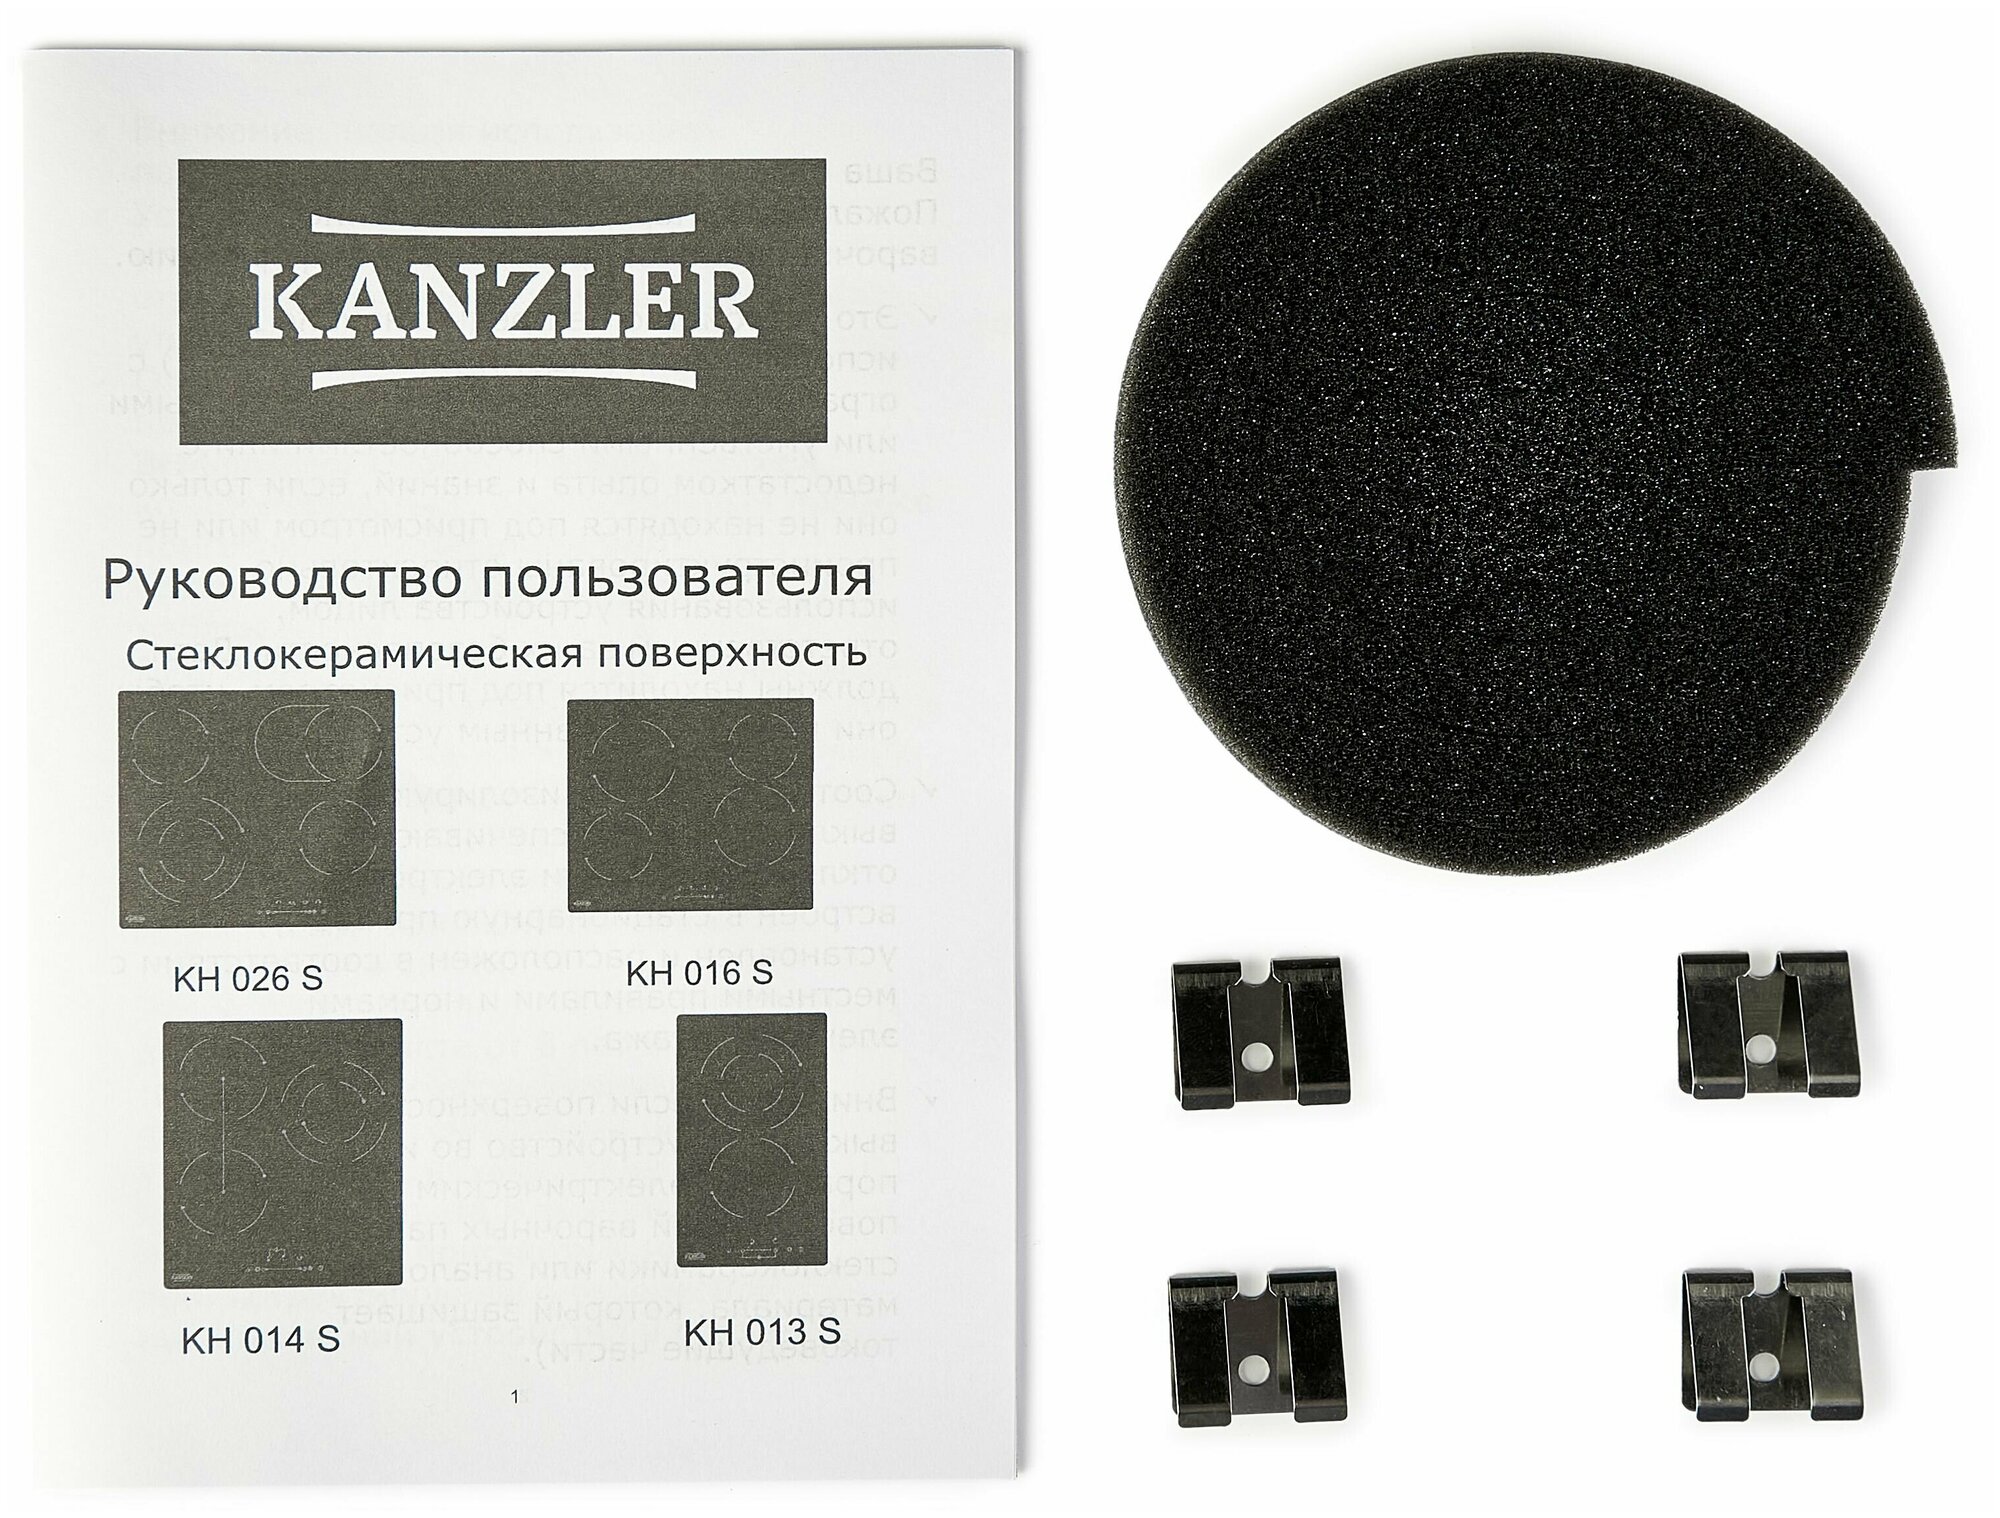 Электрическая стеклокерамическая встраиваемая варочная панель на 4 конфорки Kanzler KH 016 S, 5 800 Вт, черная - фотография № 4